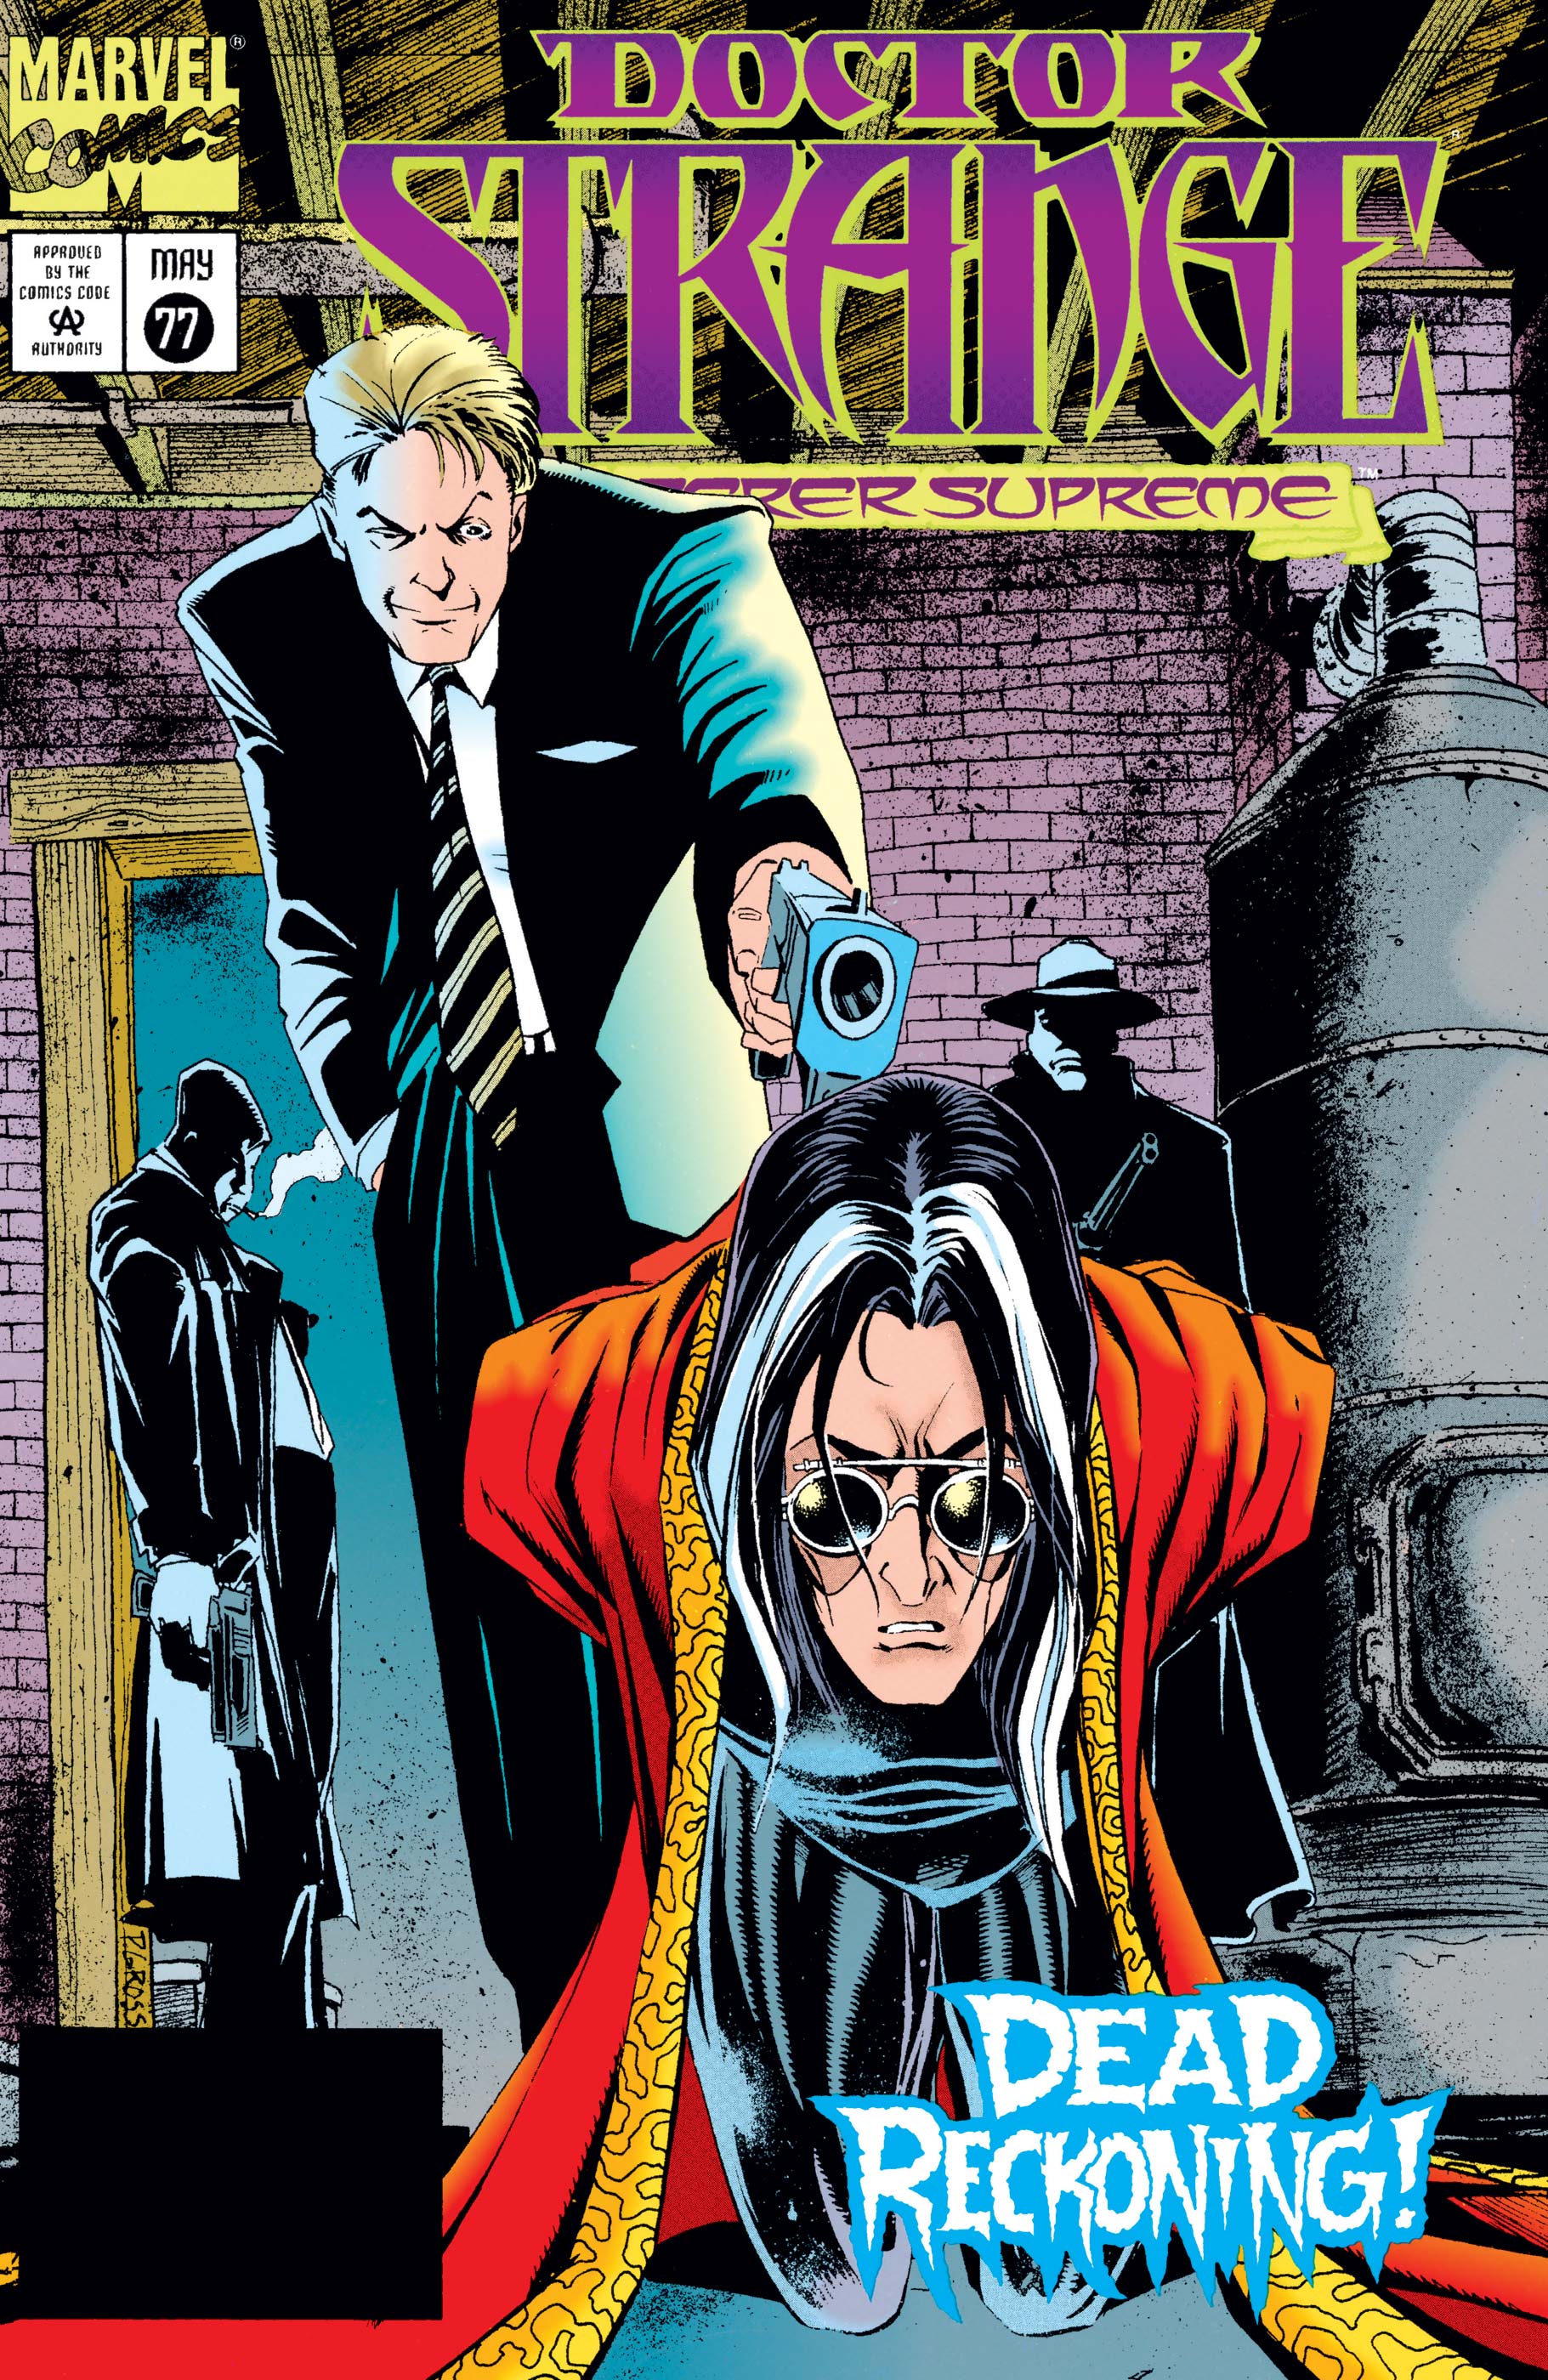 Doctor Strange, Sorcerer Supreme (1988) #77